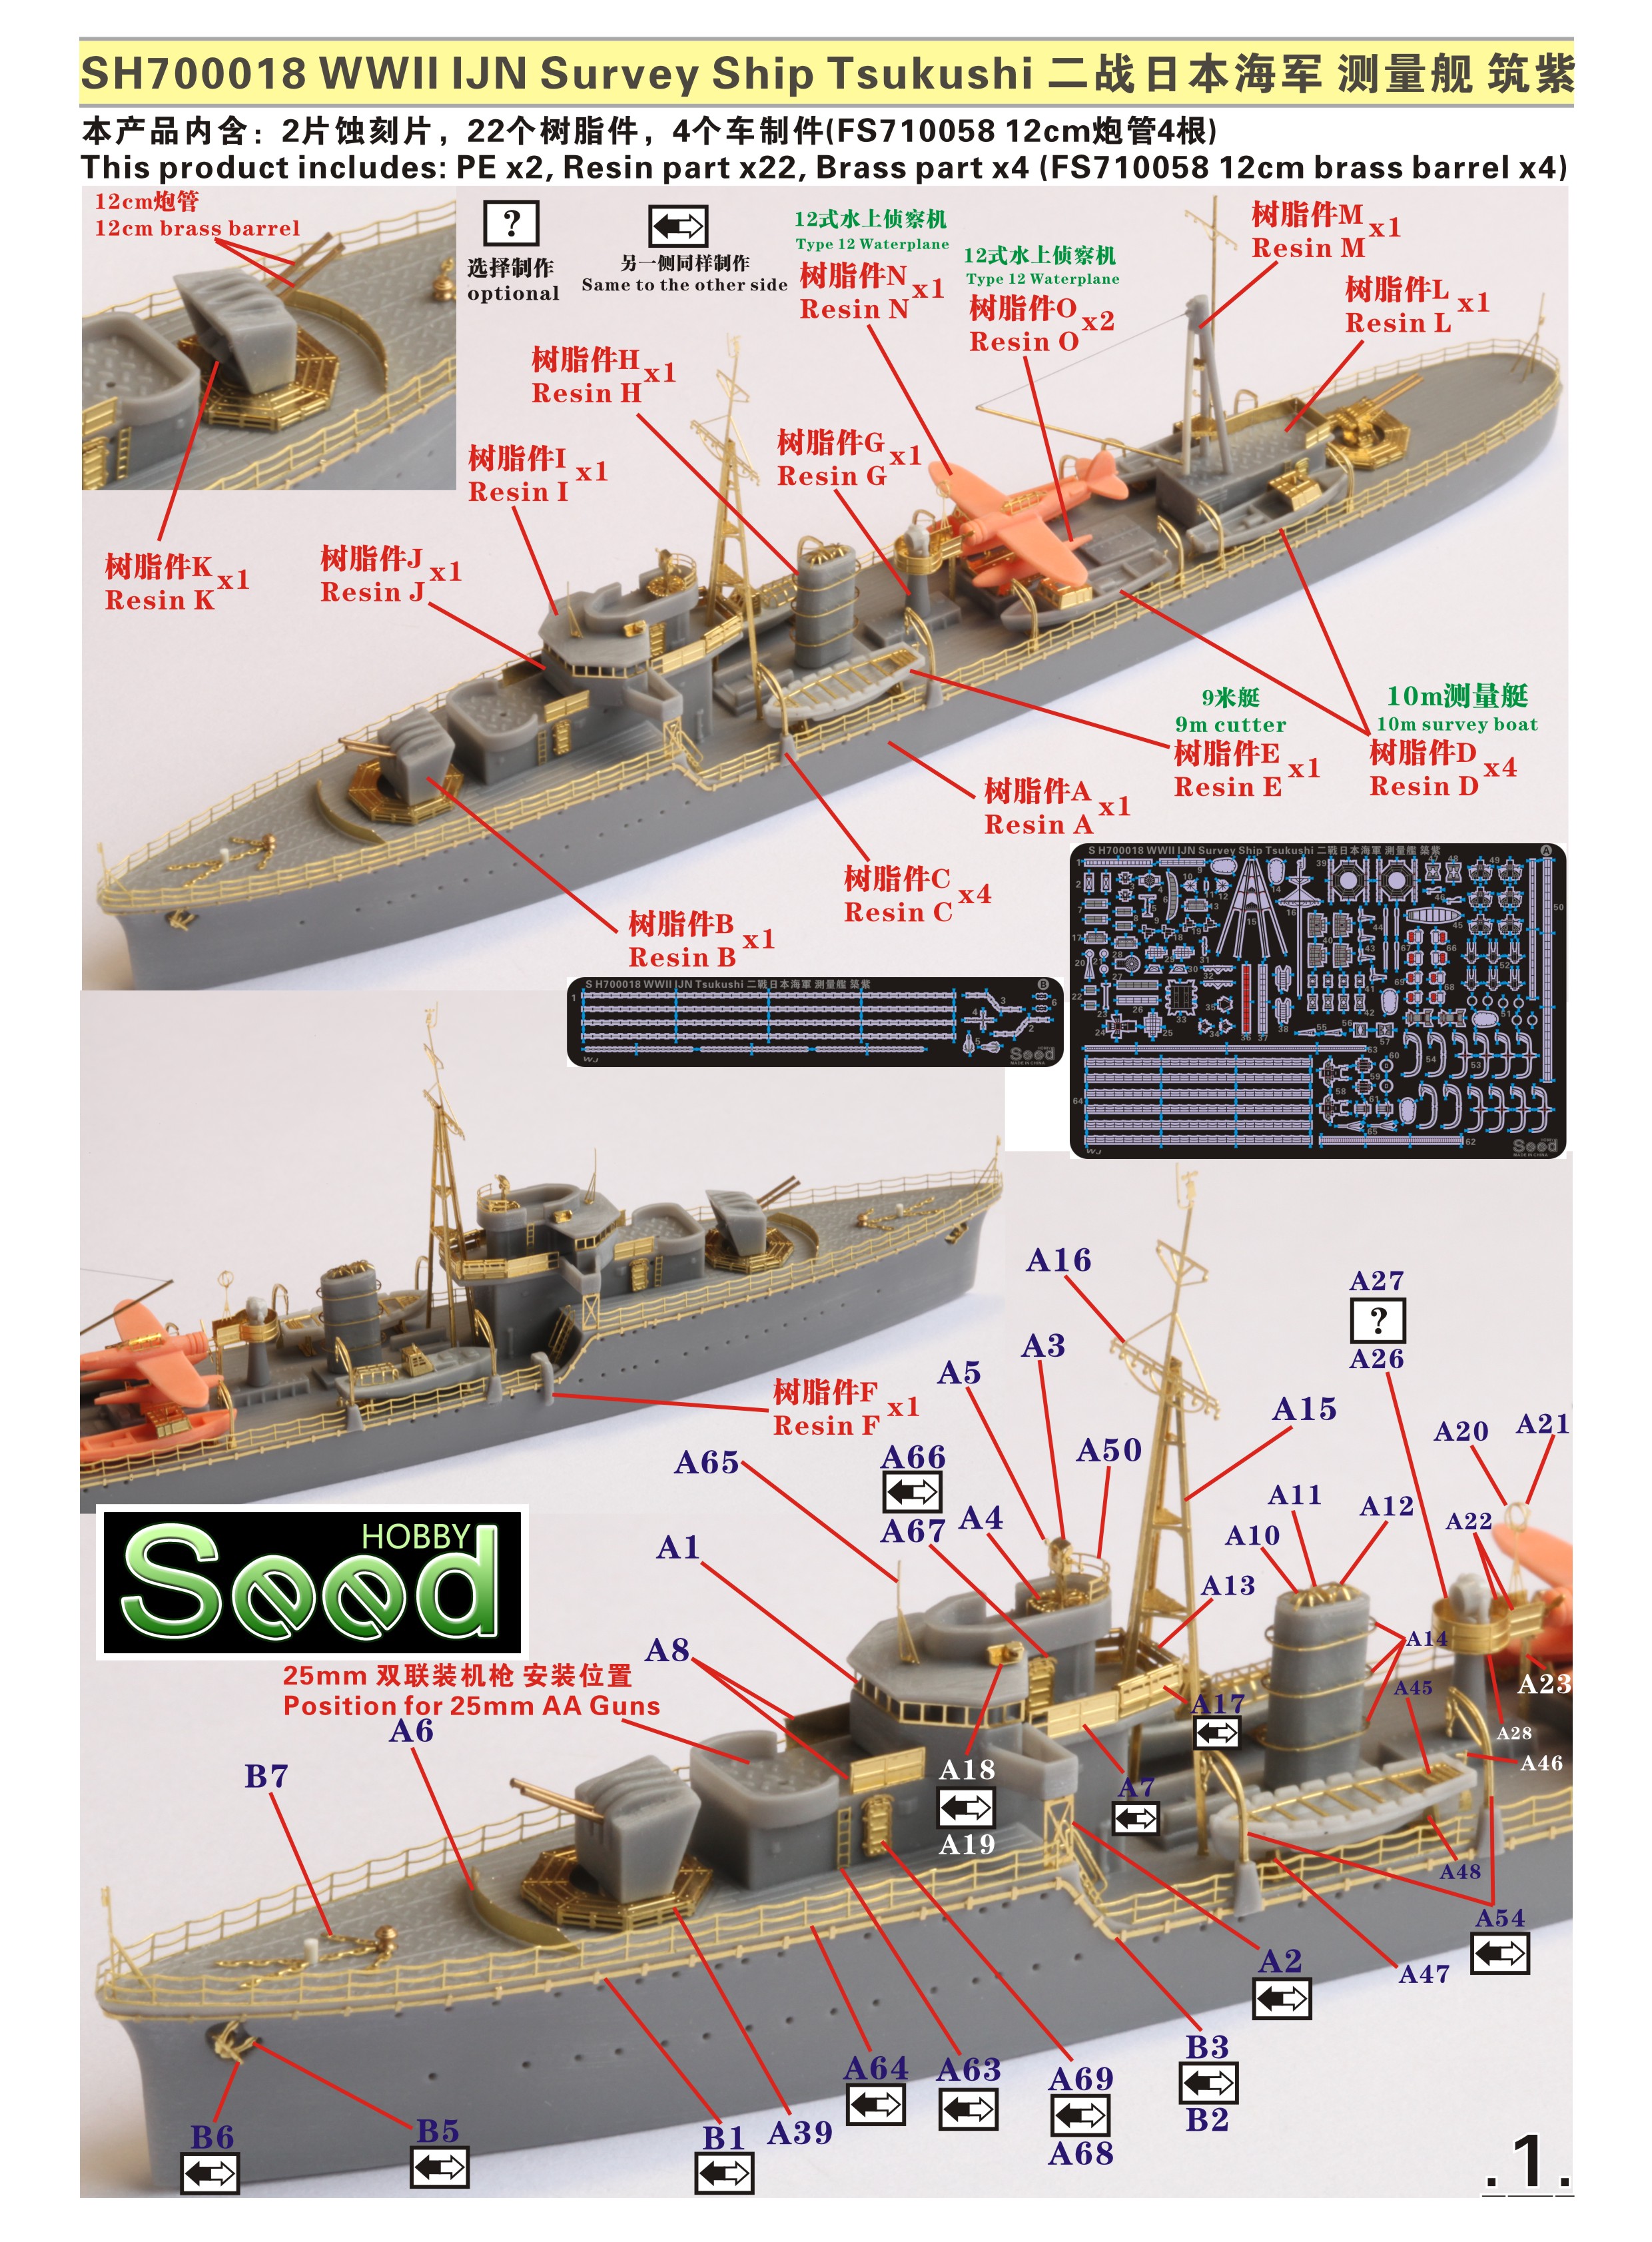 1/700 二战日本海军筑紫号测量舰树脂模型套件 - 点击图像关闭